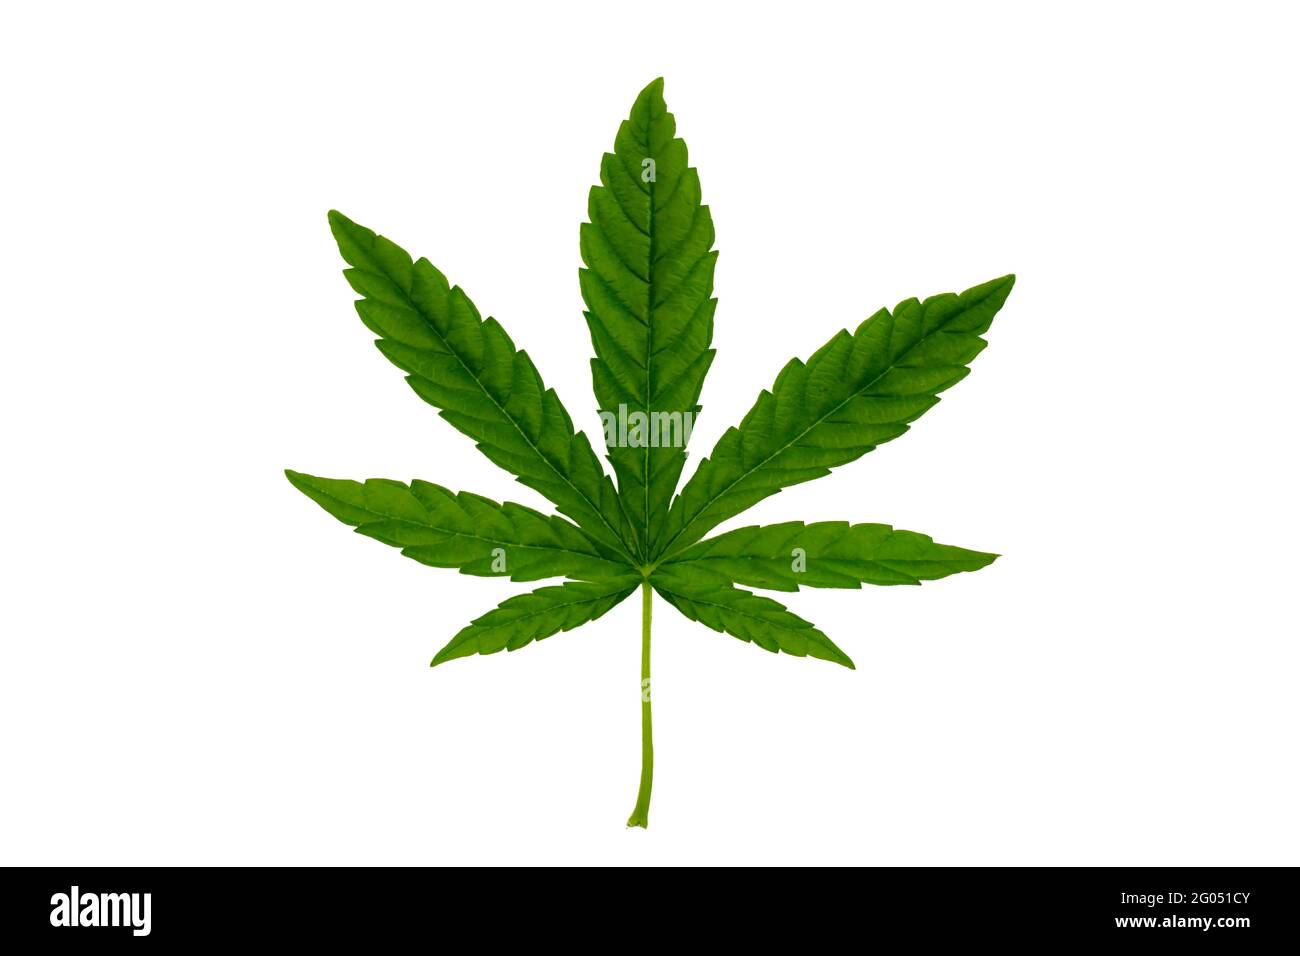 Grüne Cannabisblätter isoliert auf weißem Hintergrund. Konzept des Anbaus von Cannabis und medizinischen Cannabisblättern. Stockfoto